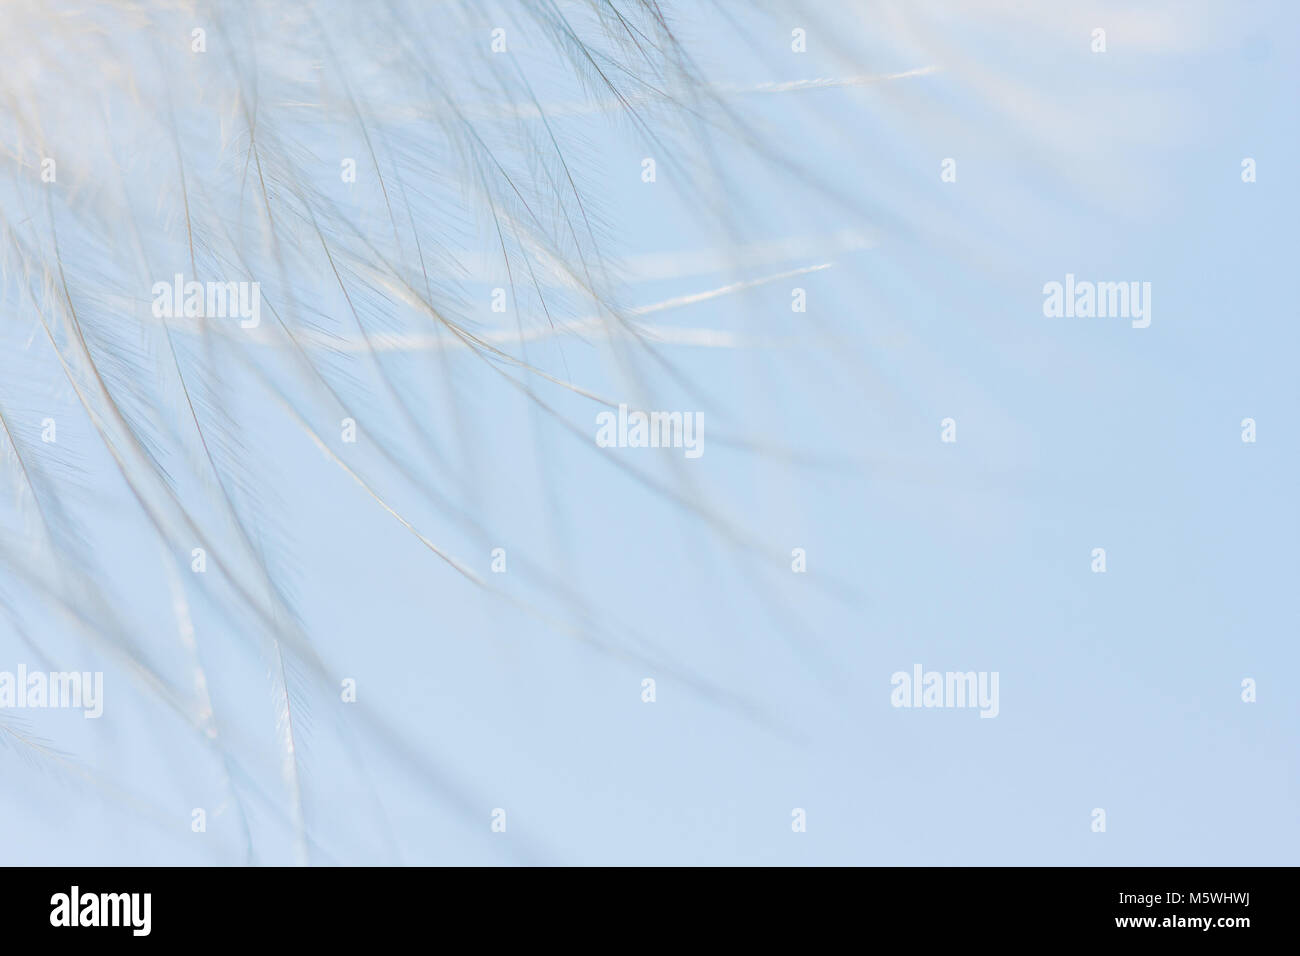 Feather contre le ciel bleu. Abstract detail background Banque D'Images